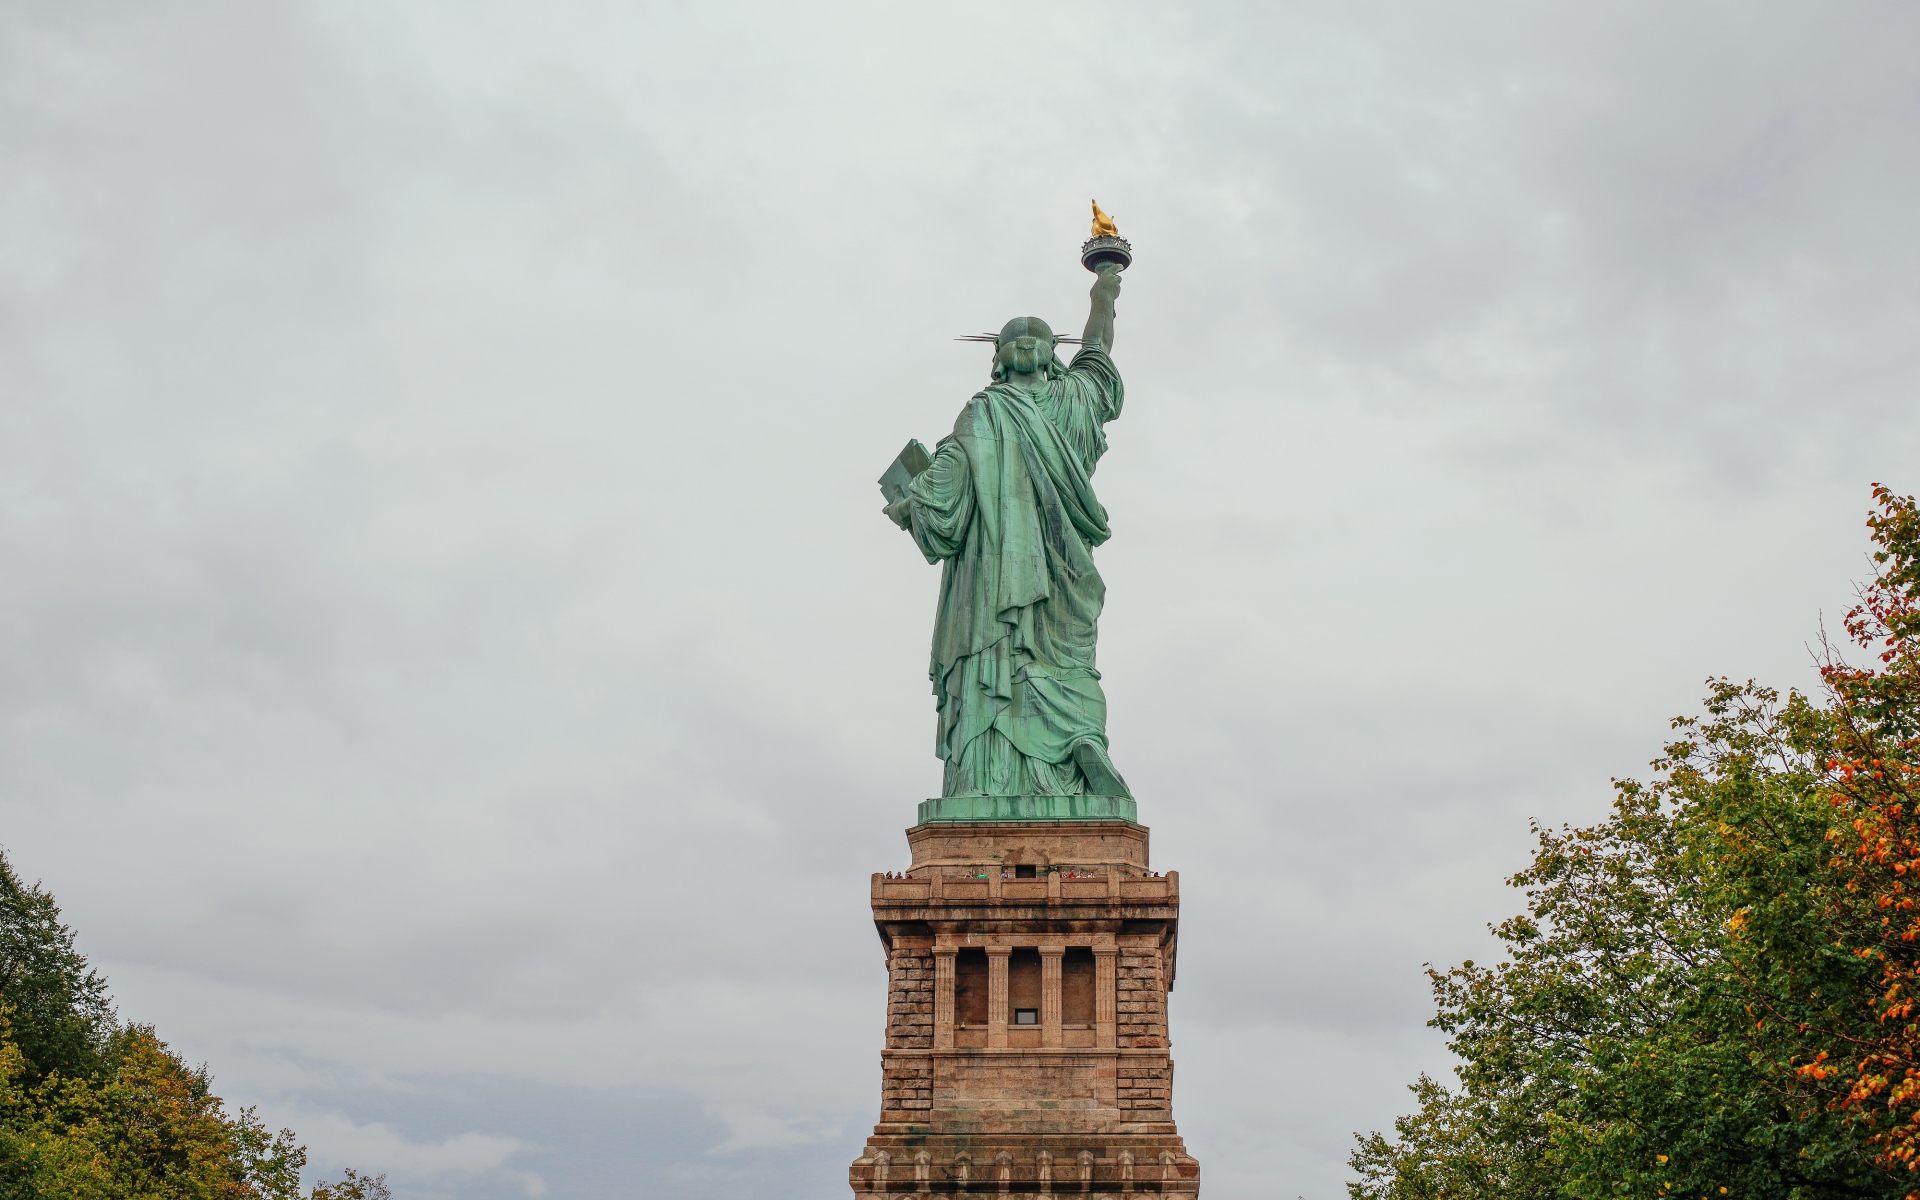 Картинки Нью-Йорк, статуя свободы, скульптура фото и обои на рабочий стол